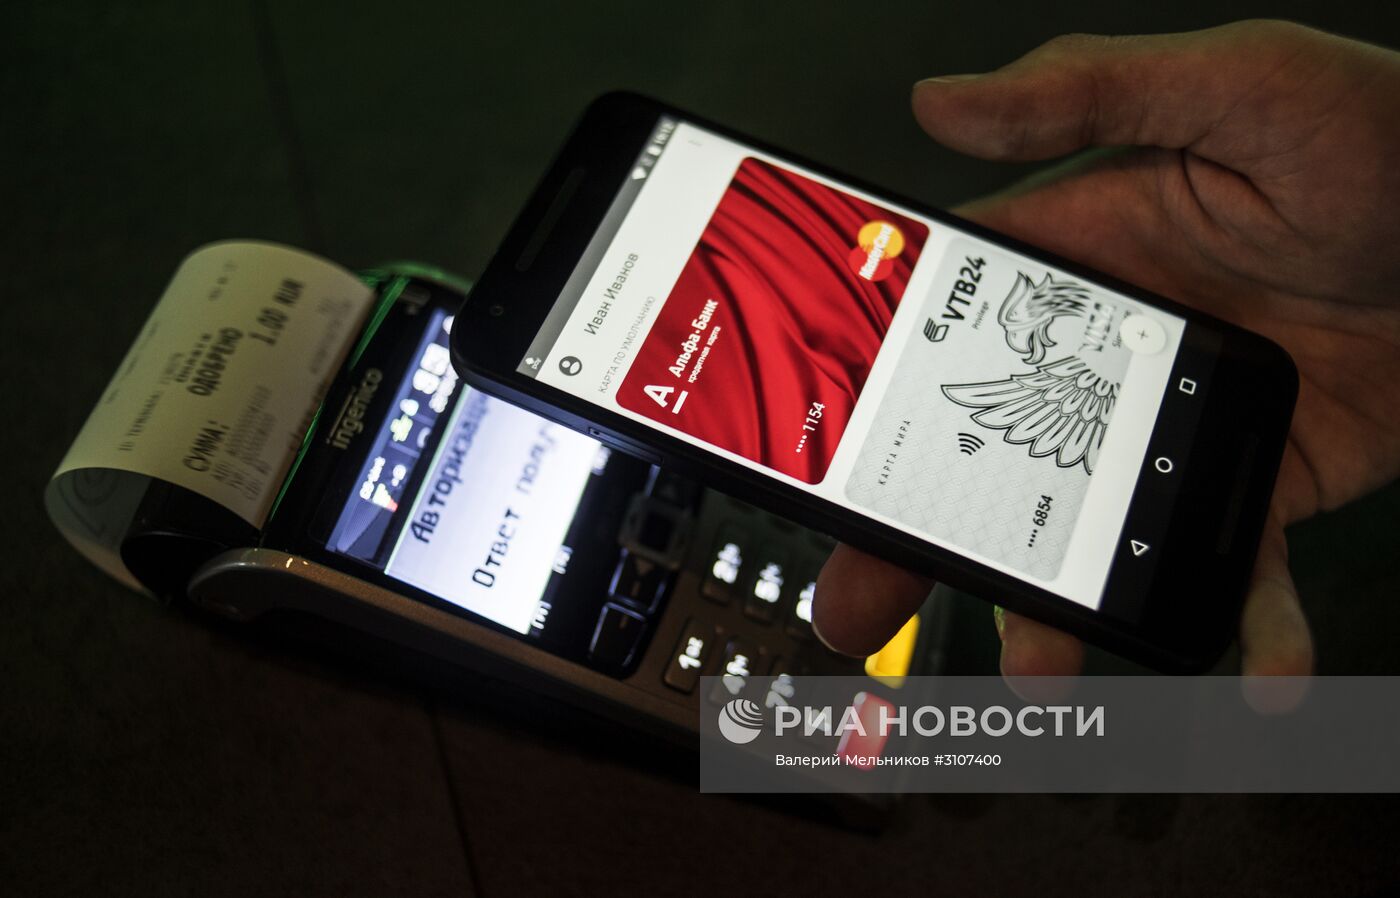 Презентация нового сервиса Google в России